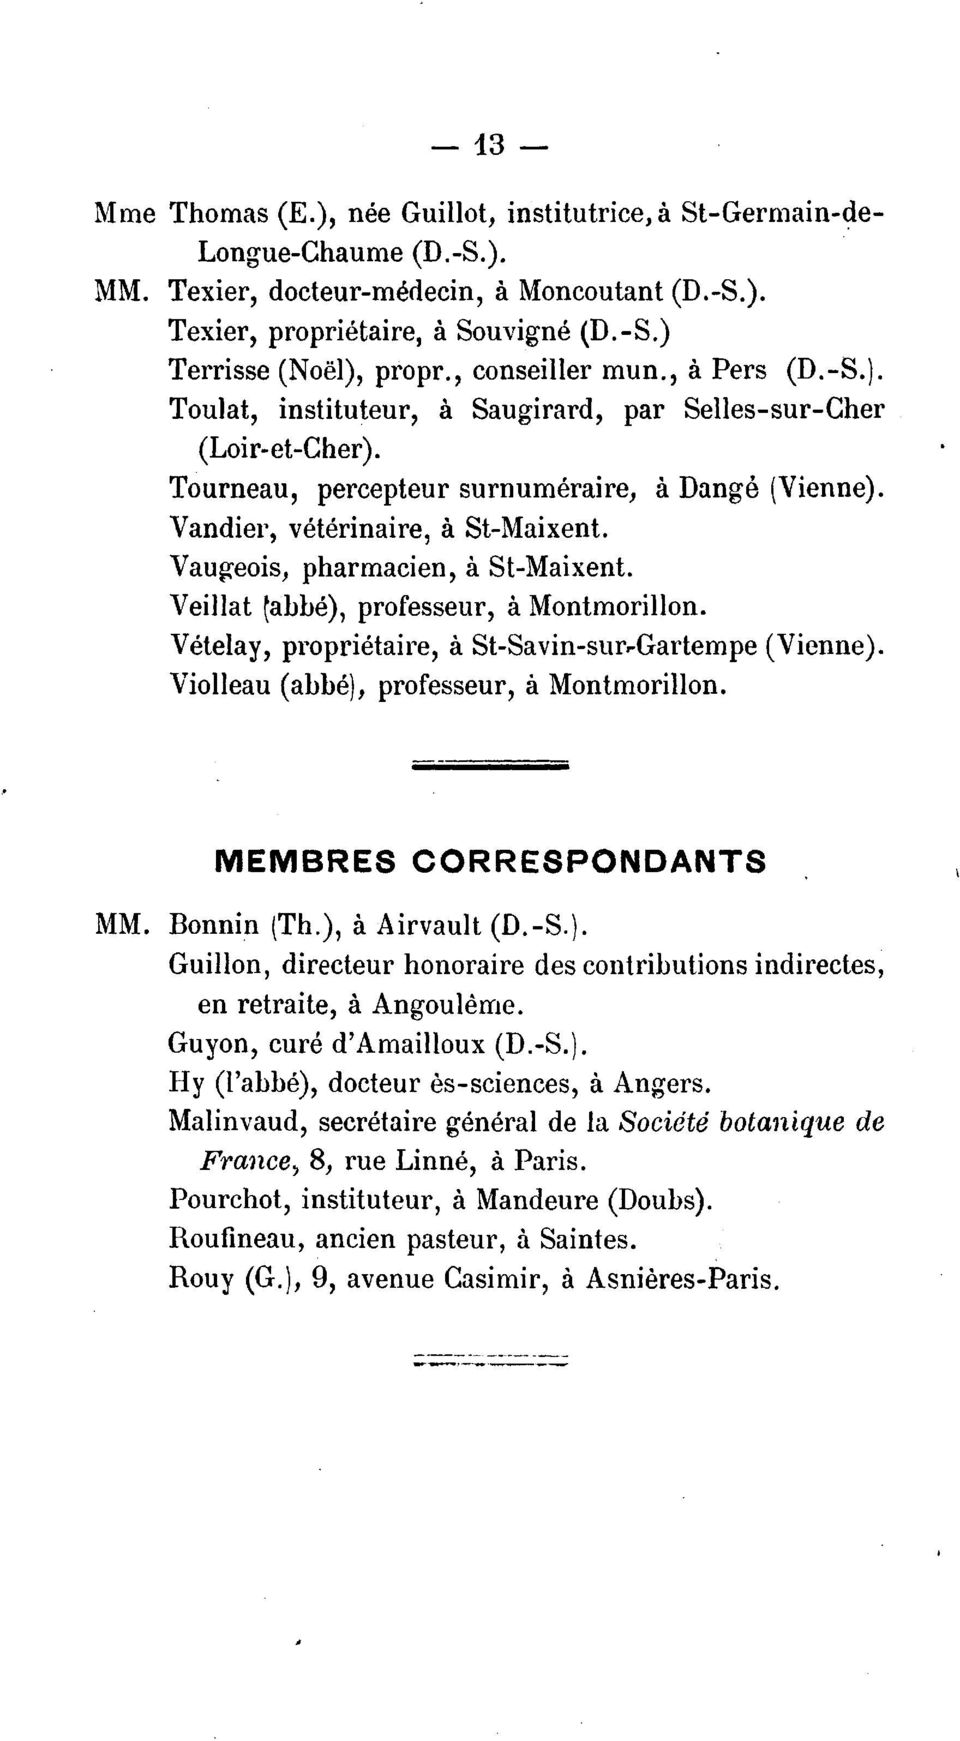 Vau~eois, pharmacien, a St-Maixent. professeur, a Montmorillon. Veillat ~abbe), Vetelay, proprietaire, a St-Savin-sur,.Gartempe (Vienne). violleau (abbe), professeur, a Montmorillon.